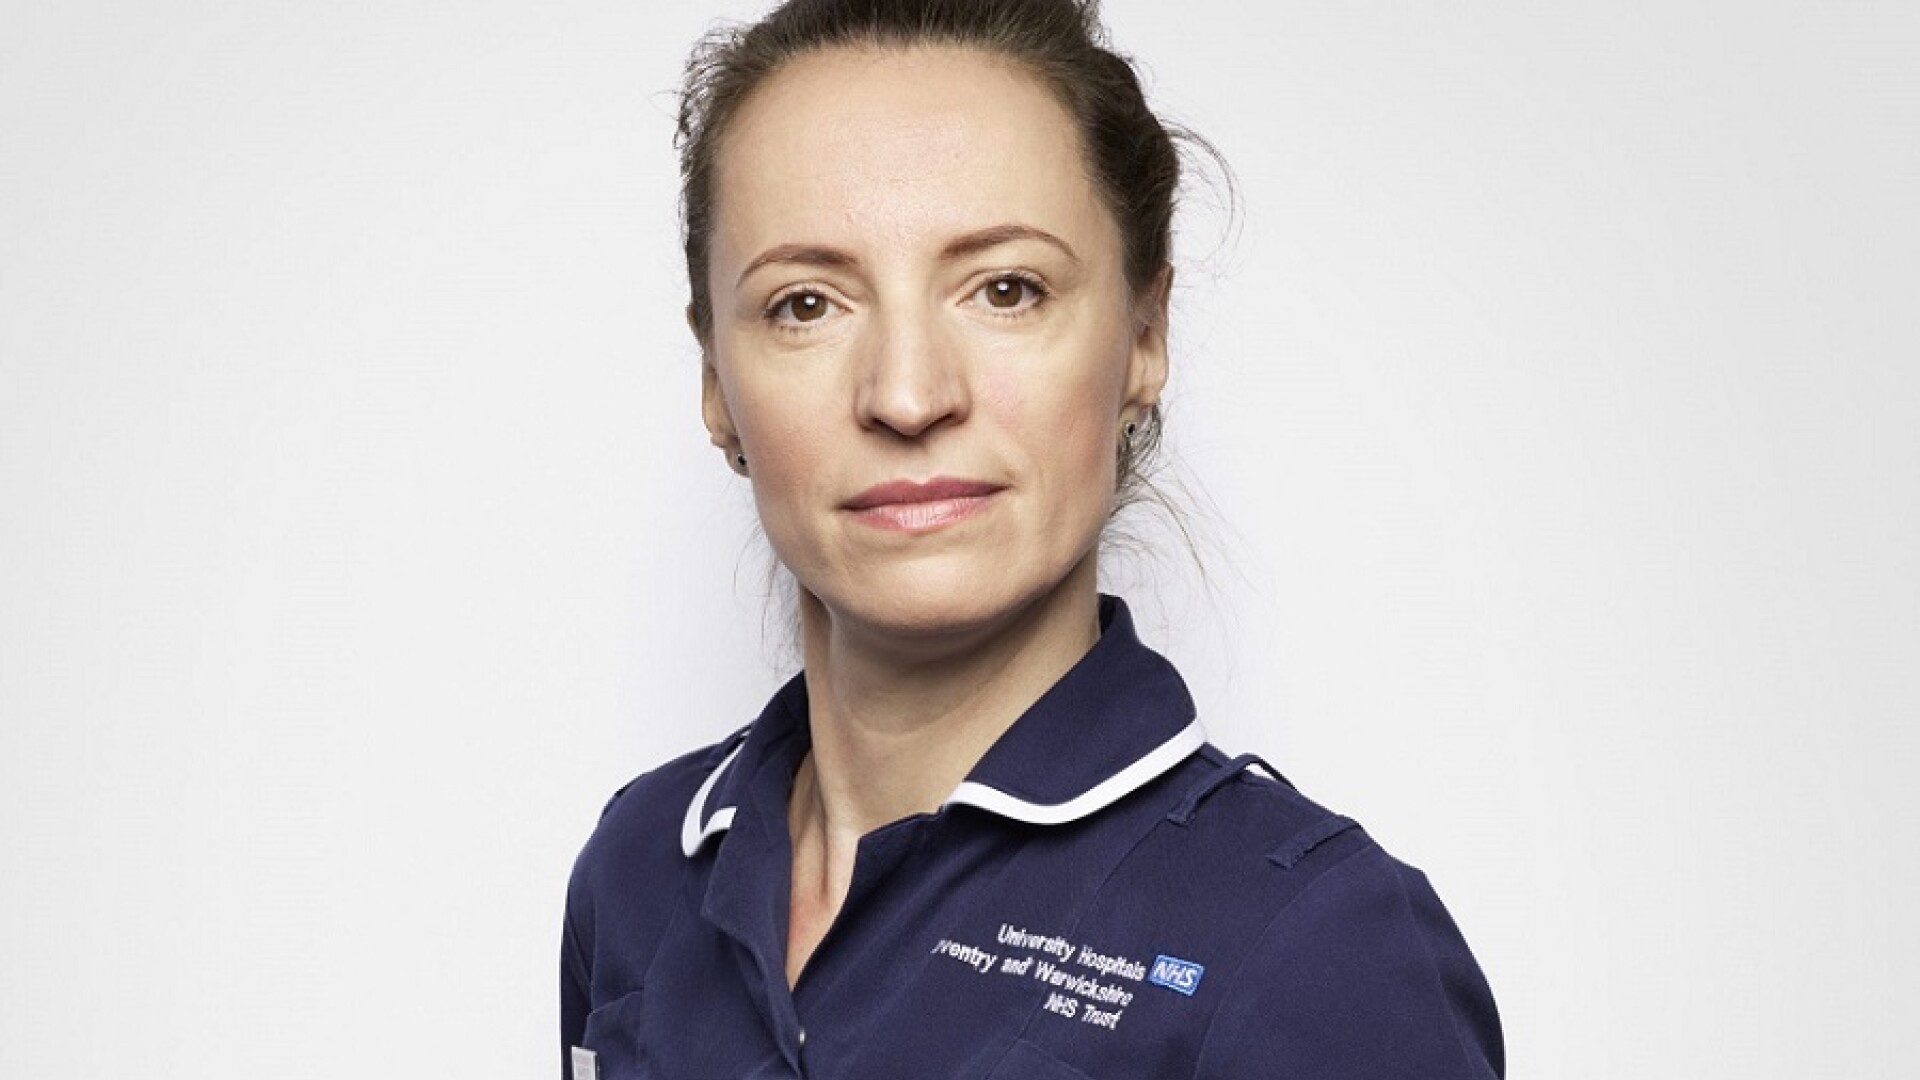 Claudia Anghel, o moașă din România a devenit imaginea Serviciului național de sănătate (NHS) din UK